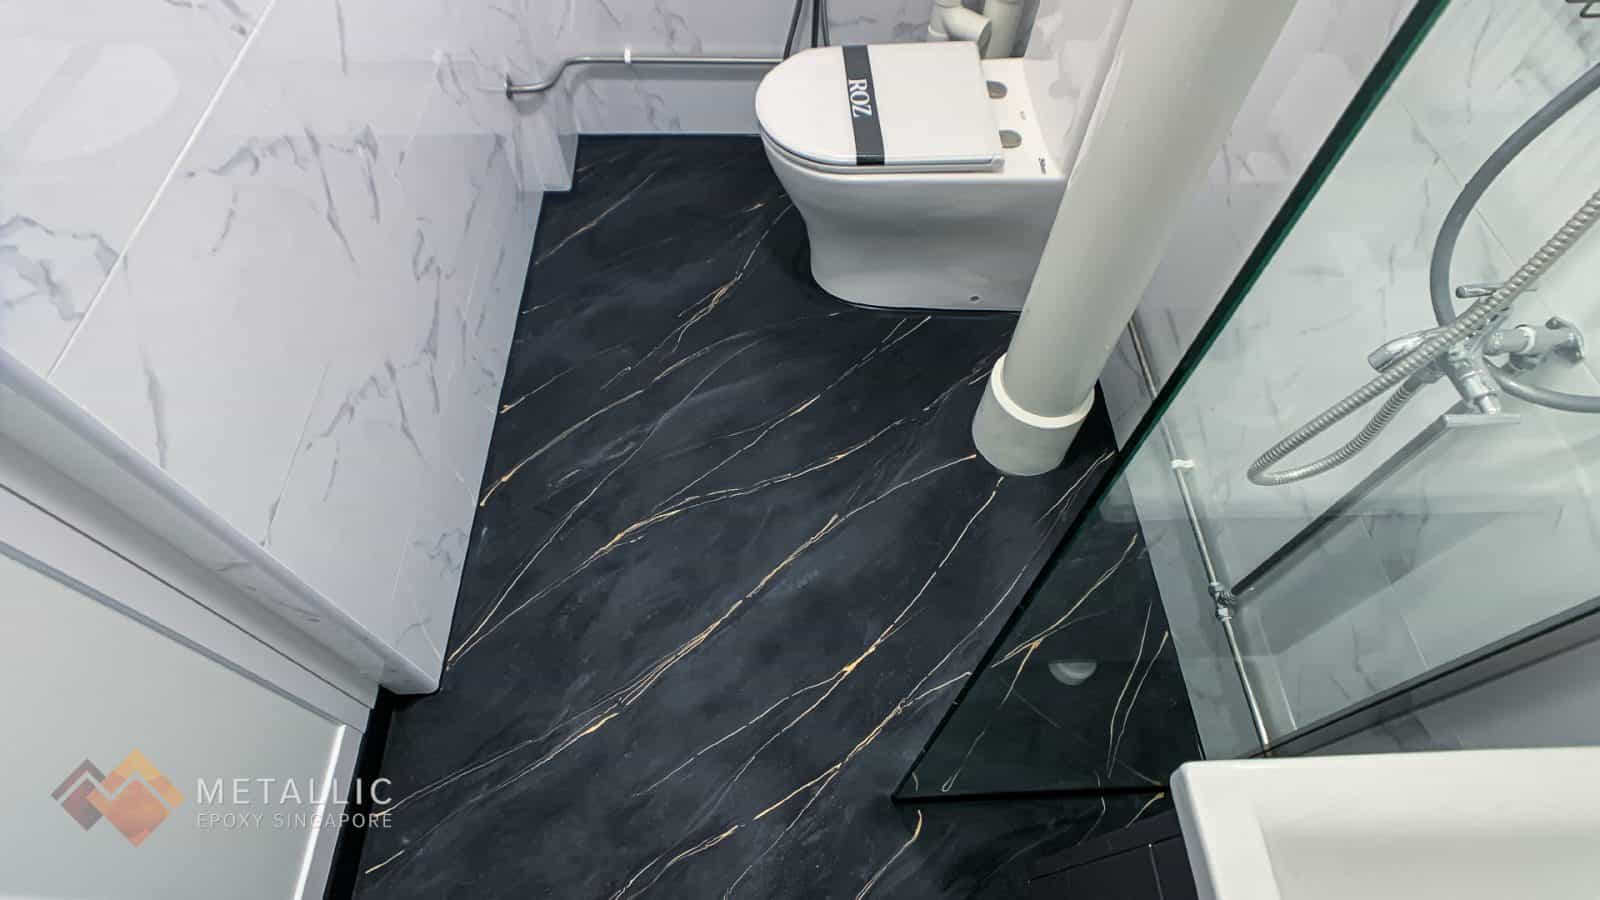 Charcoal Marble Bathroom Flooring